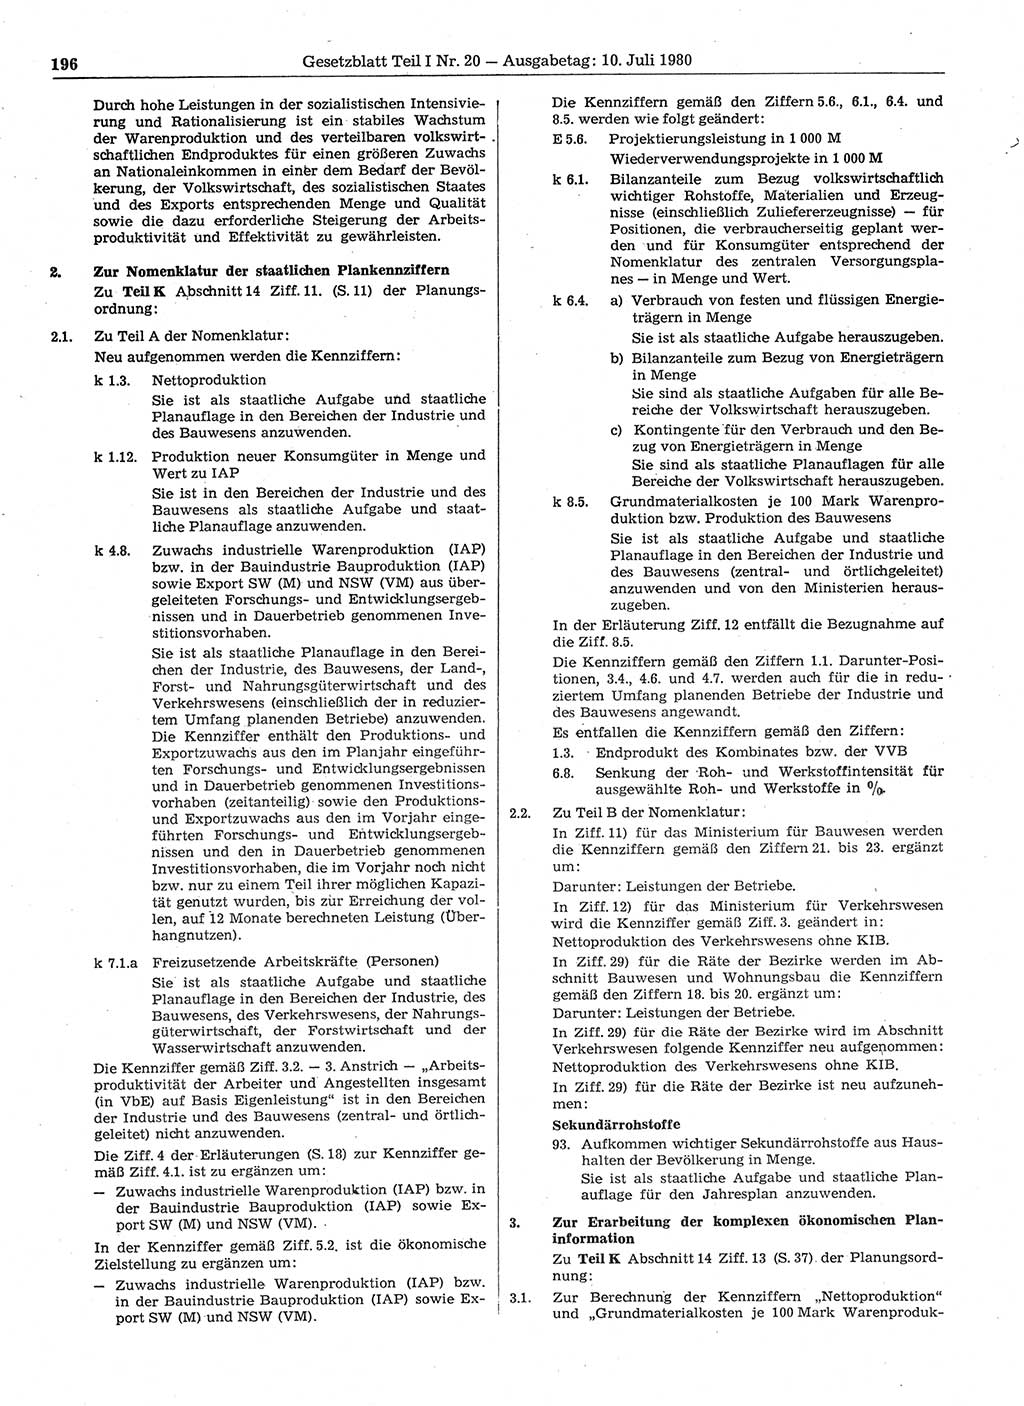 Gesetzblatt (GBl.) der Deutschen Demokratischen Republik (DDR) Teil Ⅰ 1980, Seite 196 (GBl. DDR Ⅰ 1980, S. 196)